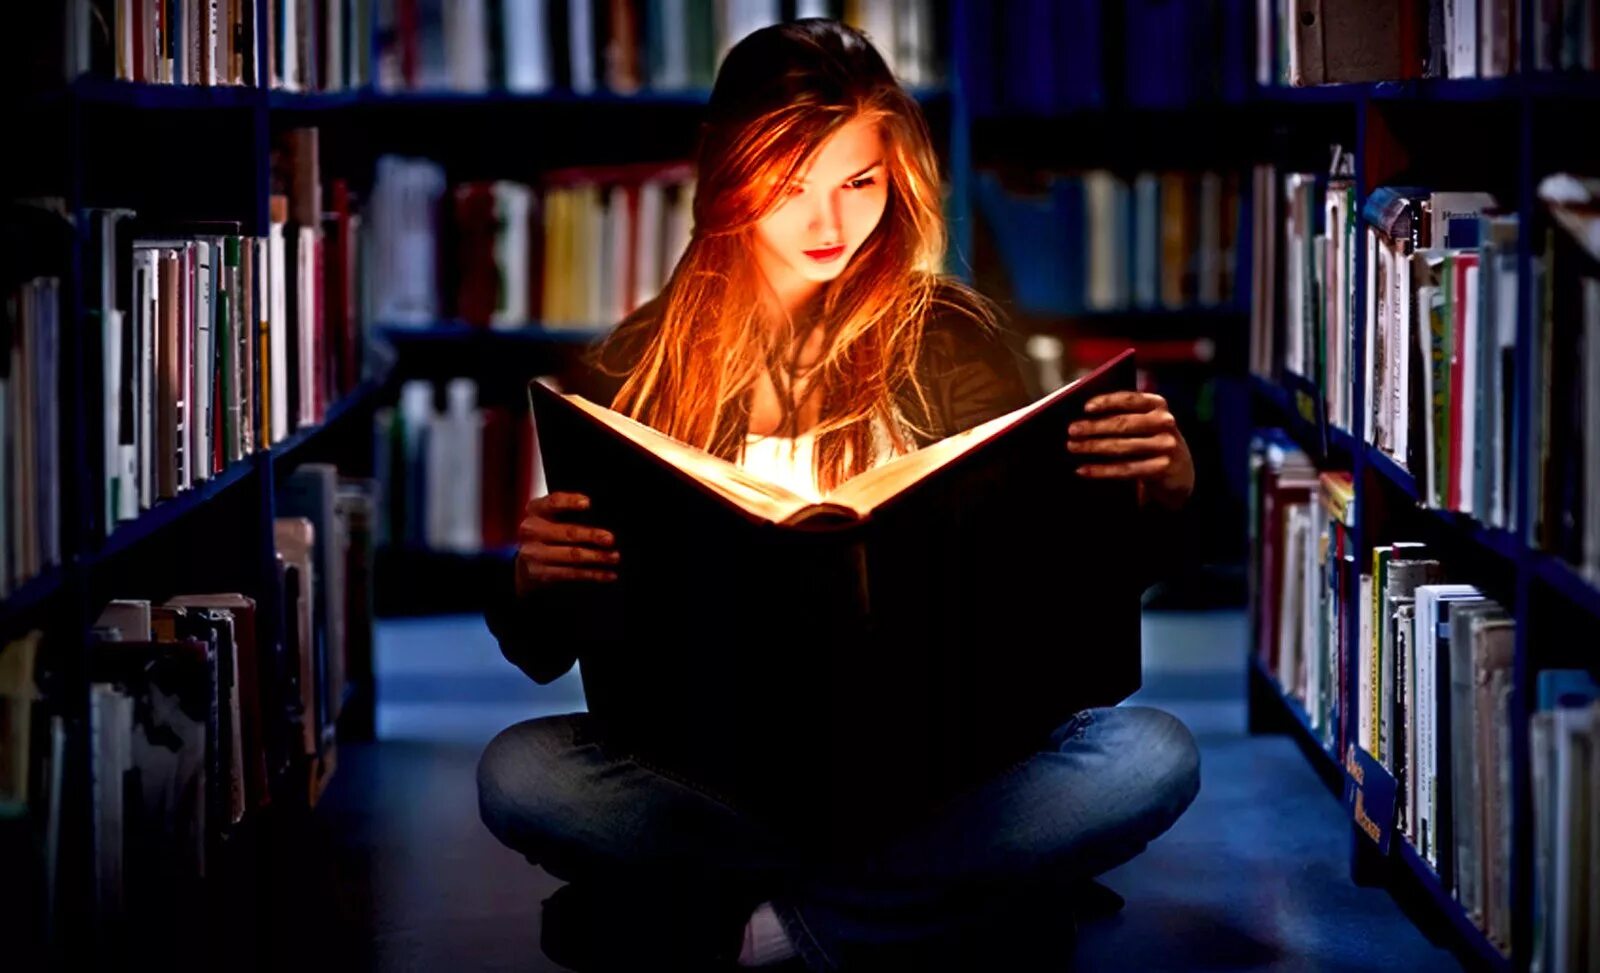 9 Августа день книголюбов. Чтение книг. Девушка с книгой. Фотосессия в библиотеке.